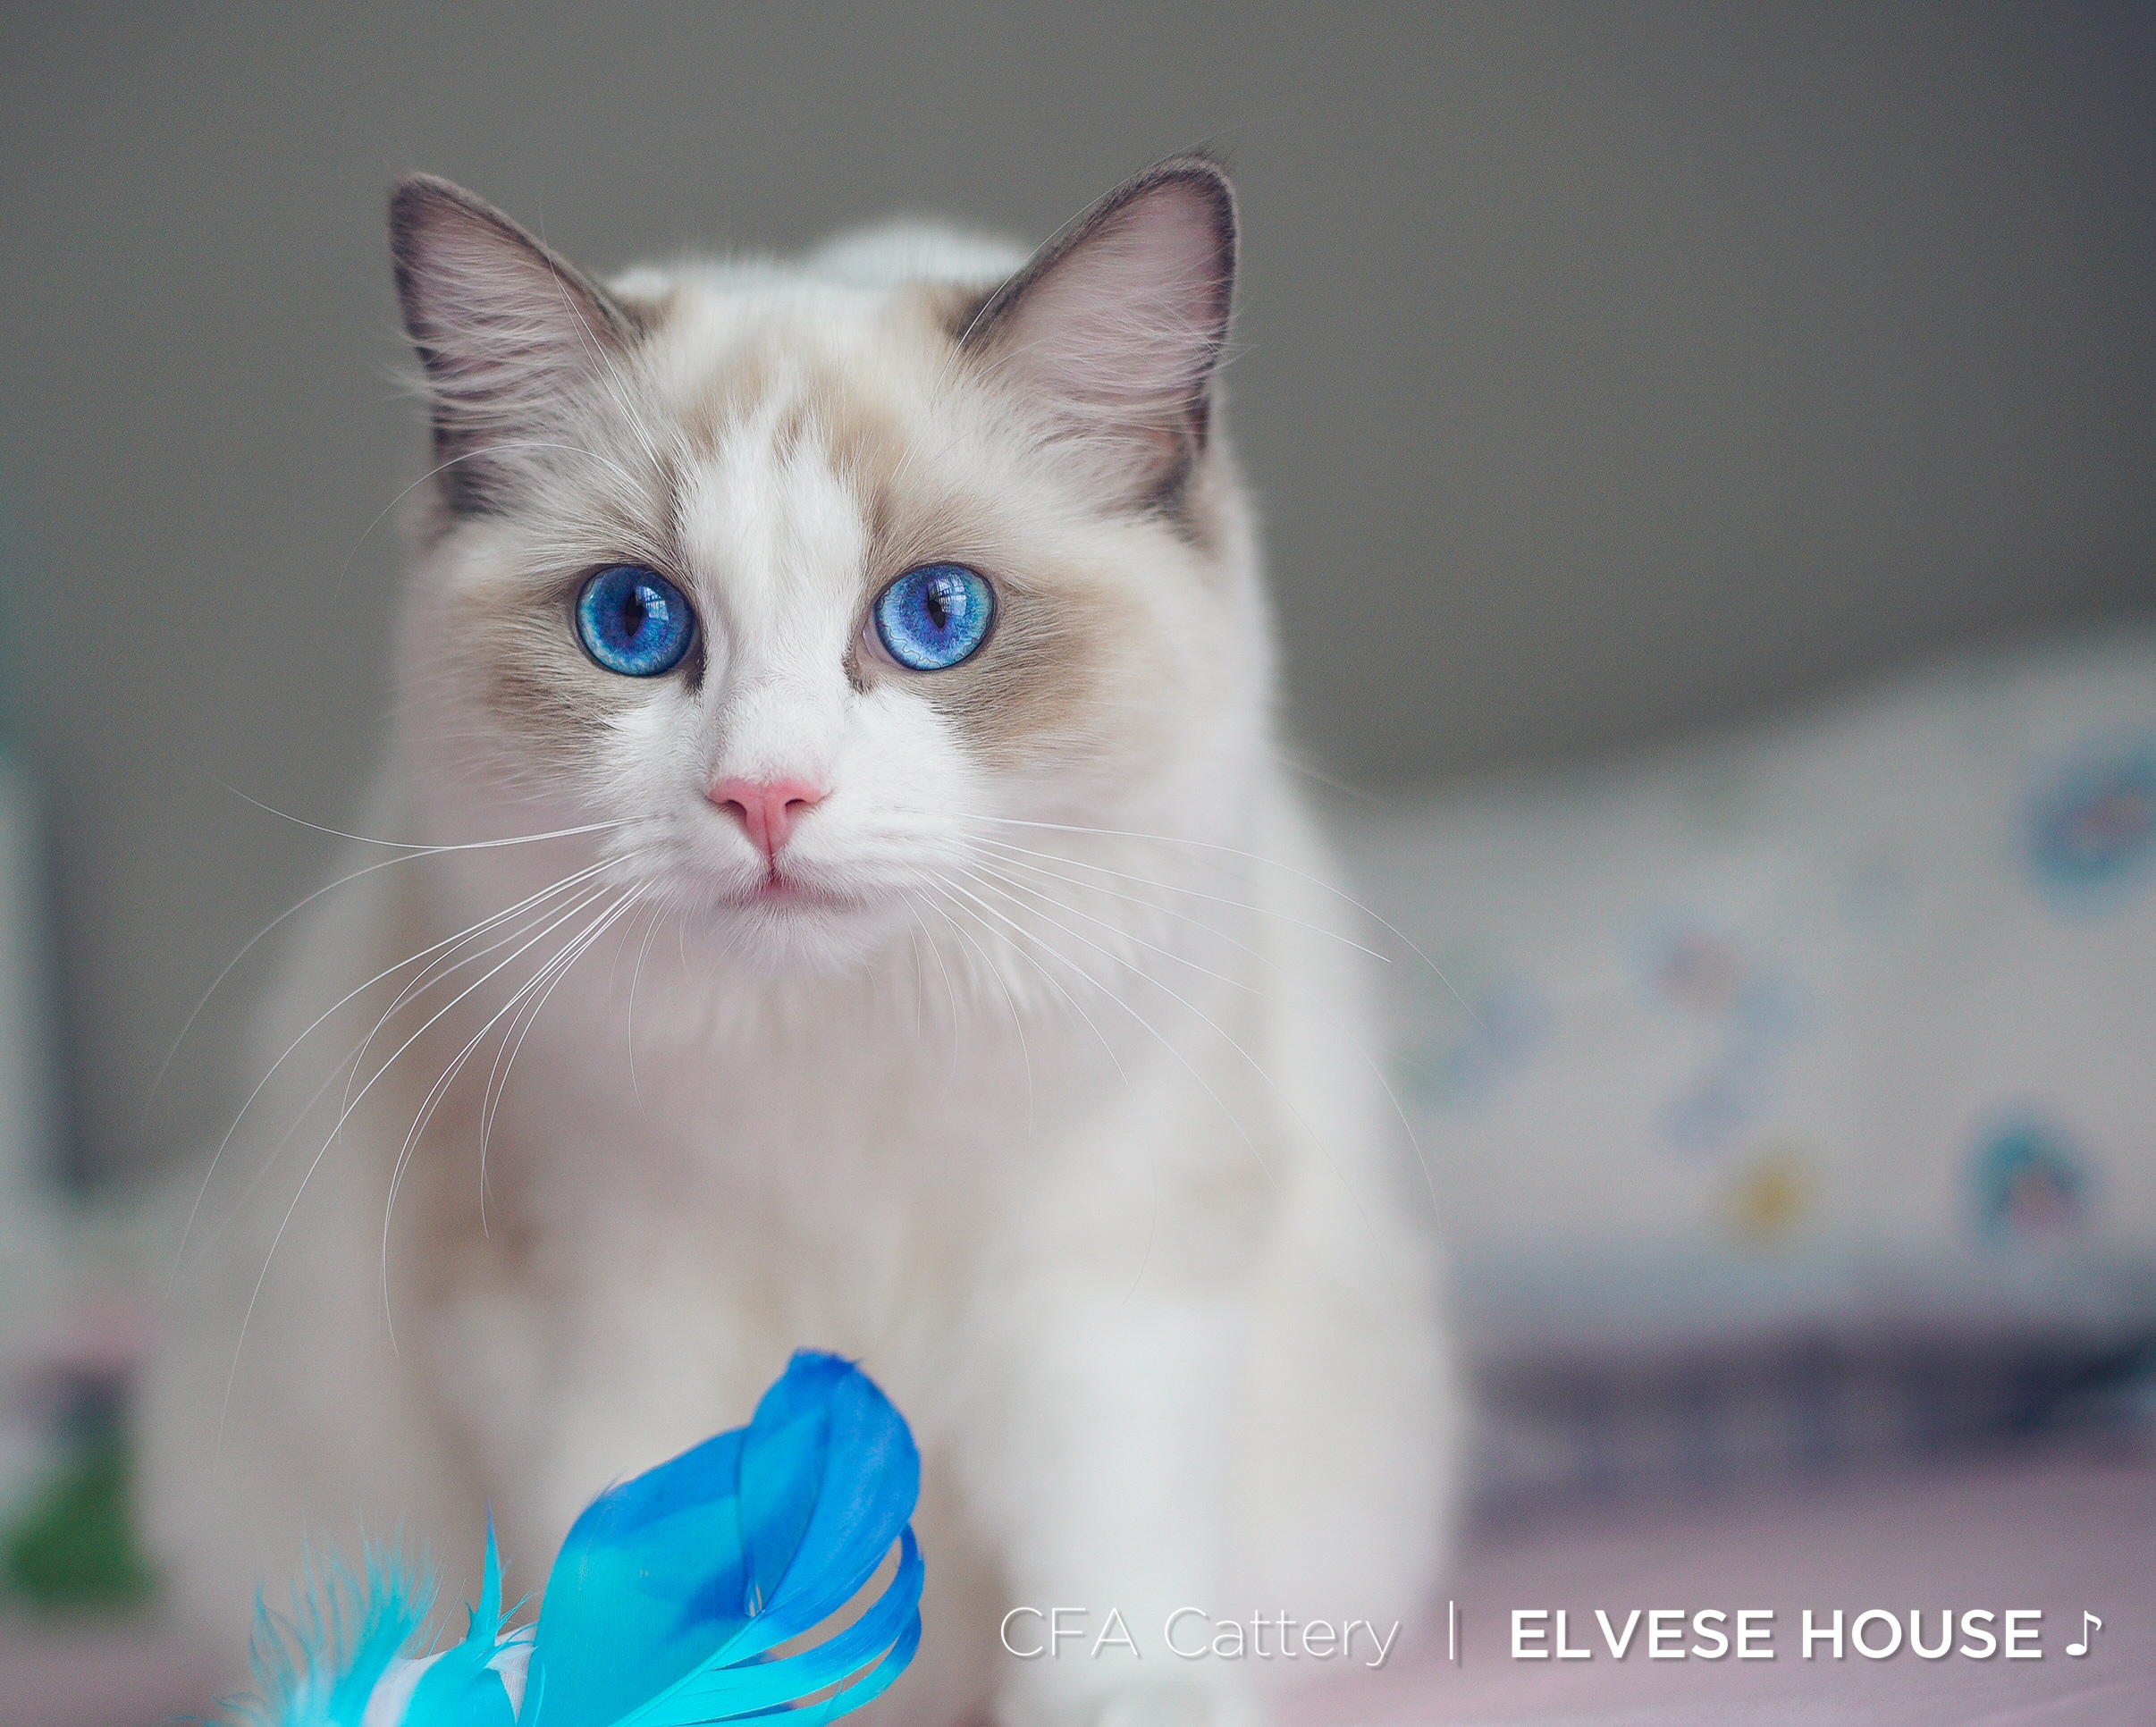 来看看这几只来自ElvesHouse深圳布偶猫舍的猫猫